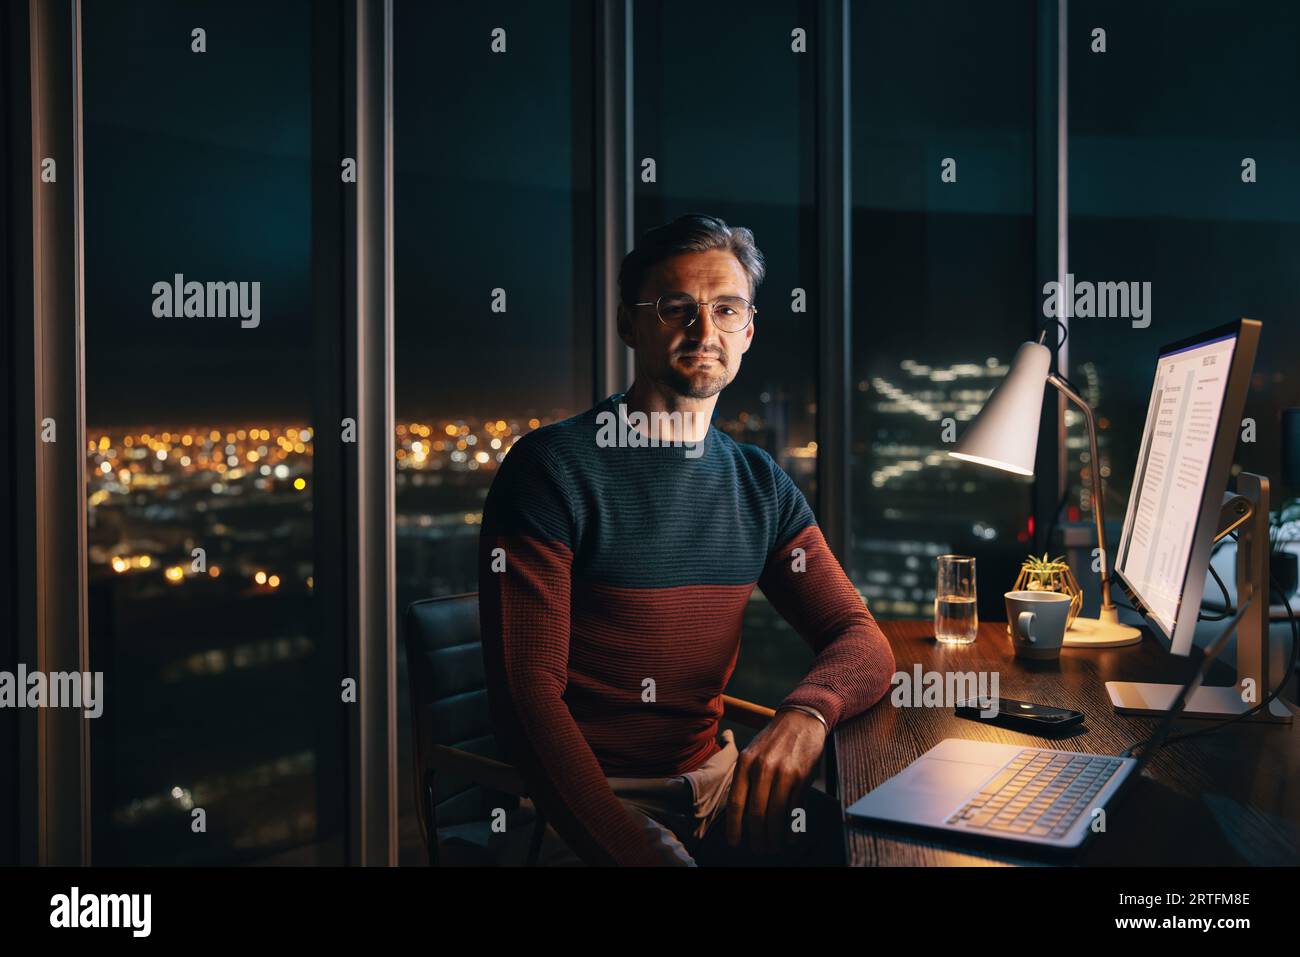 Un homme d'affaires caucasien concentré travaillant tard dans la nuit dans un bureau. Il est assis à son bureau, regardant la caméra tout en travaillant avec diligence sur un ordinateur portable. Banque D'Images